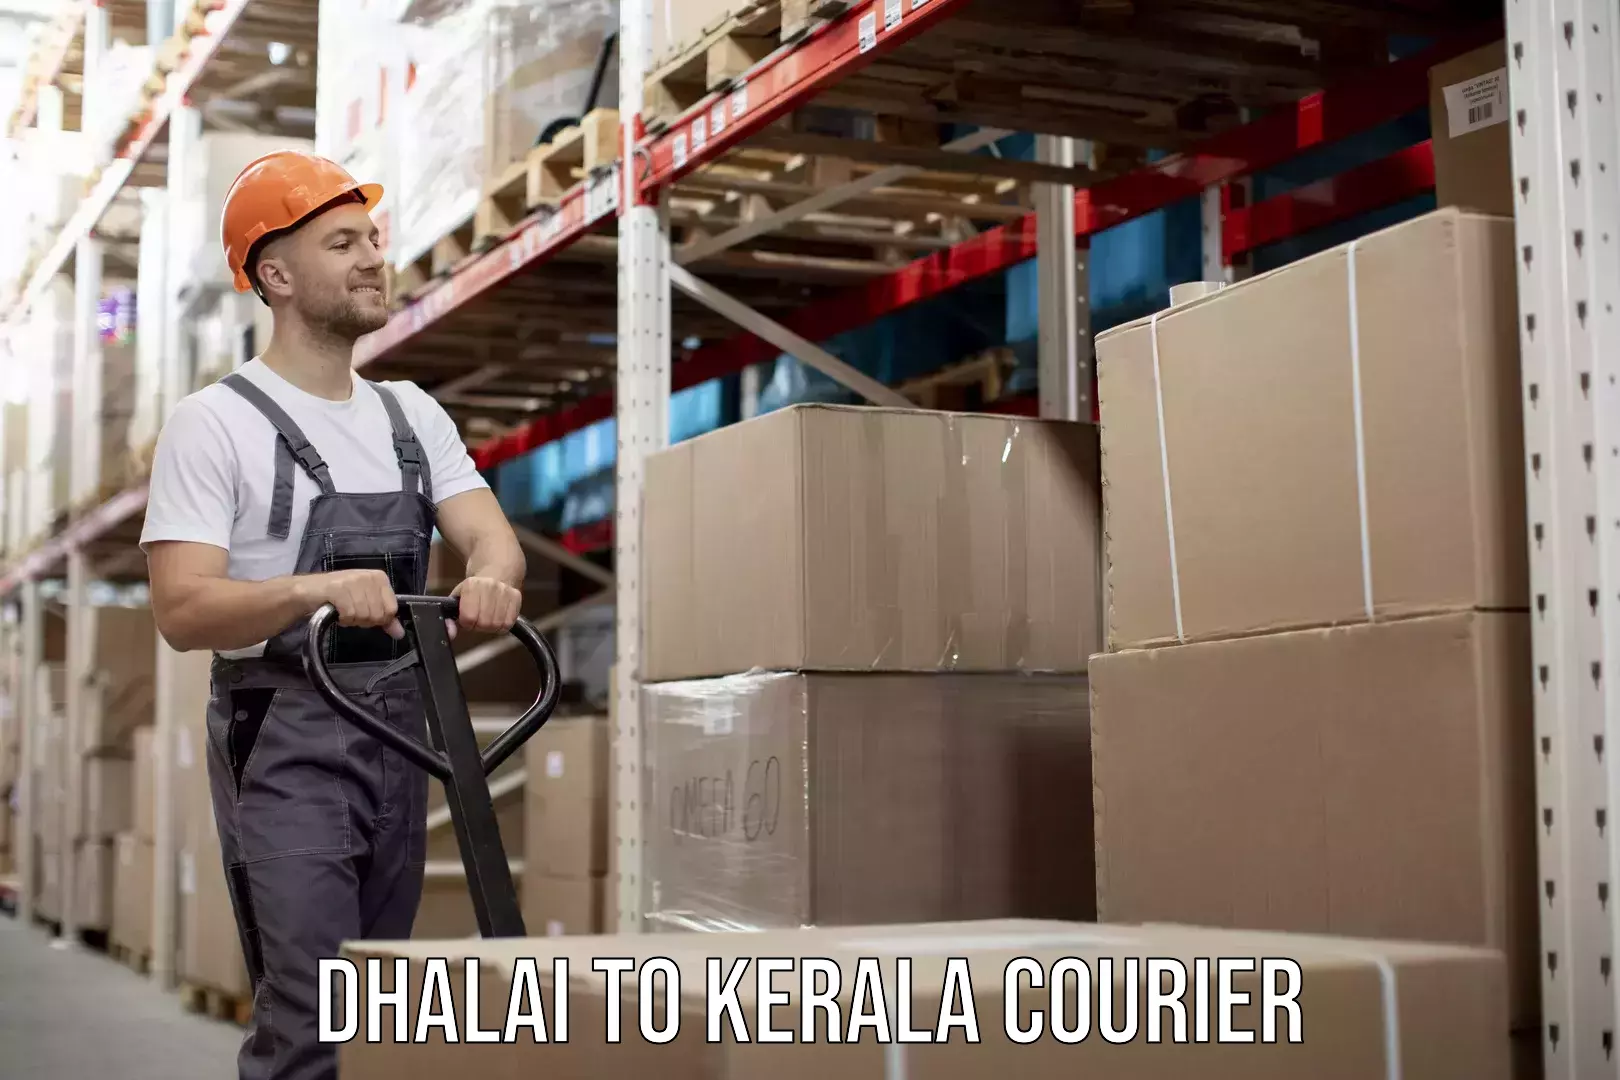 Digital courier platforms Dhalai to Kerala